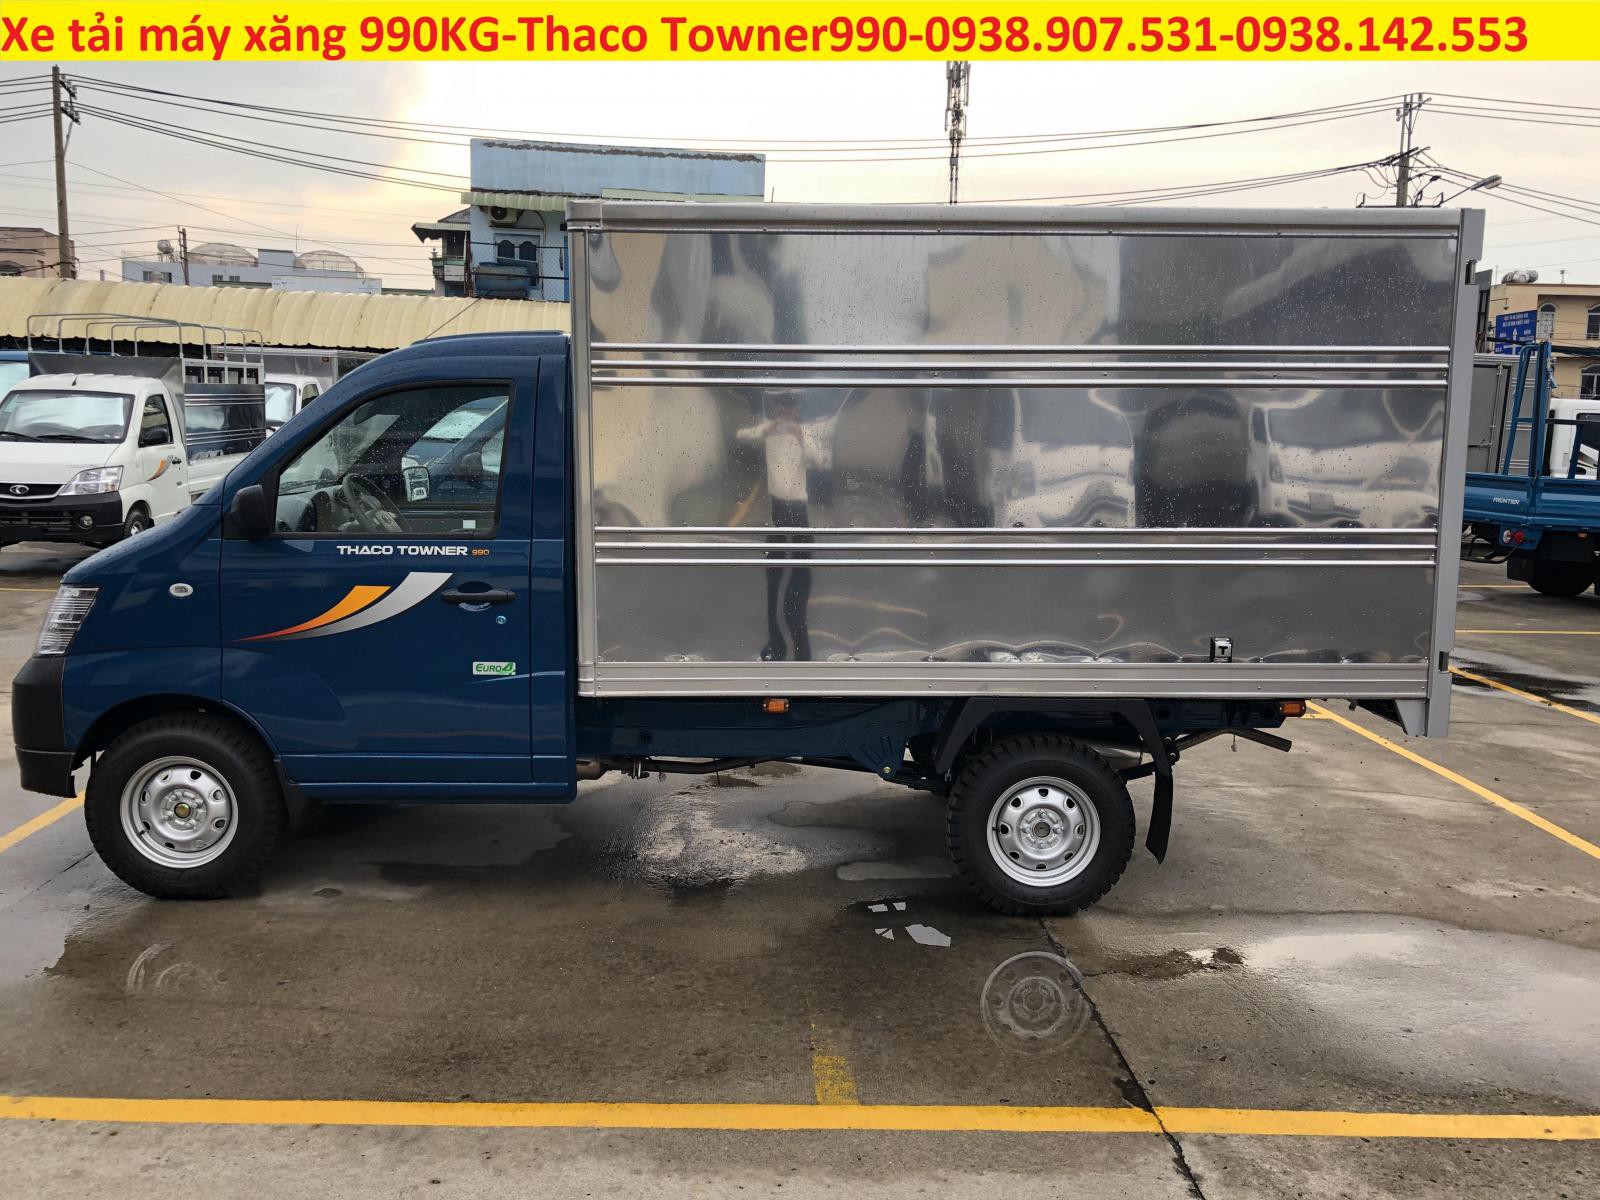 Thaco TOWNER 2020 - Cần bán xe tải Thaco Towner990 tải 990KG động cơ Changhe, hỗ trợ trả góp ngân hàng